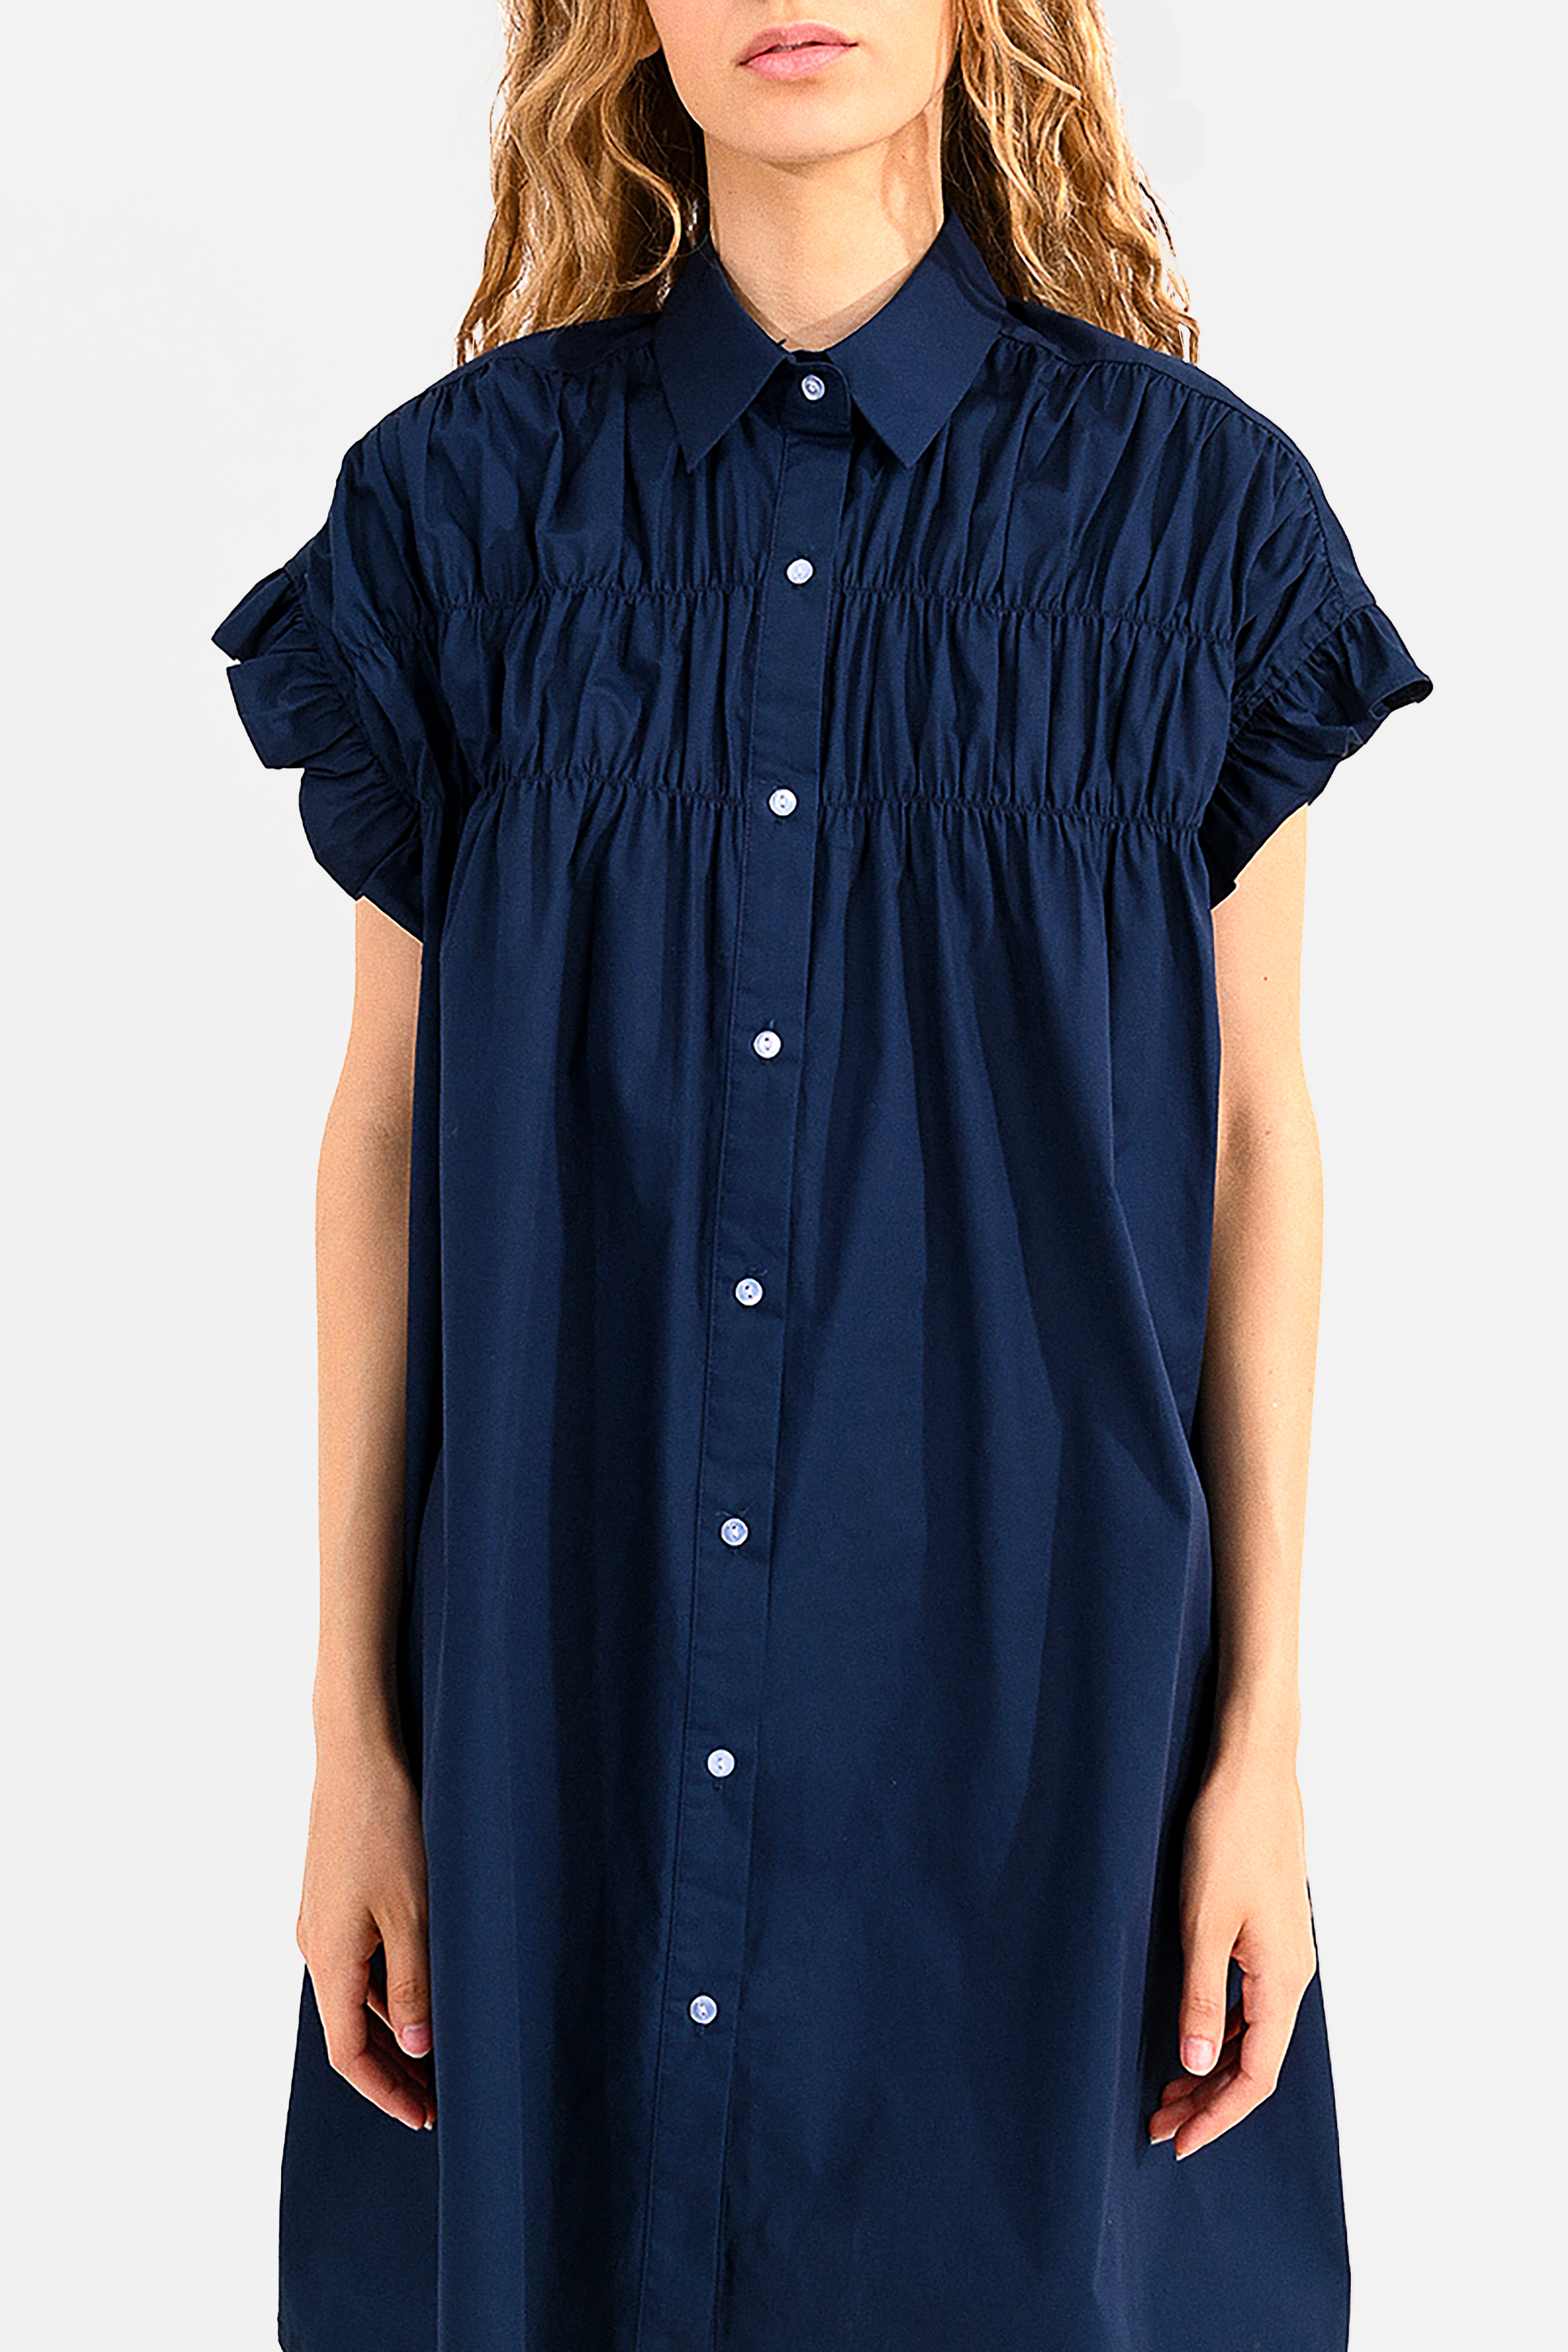 Minette Shirt Dress in Navy Blue